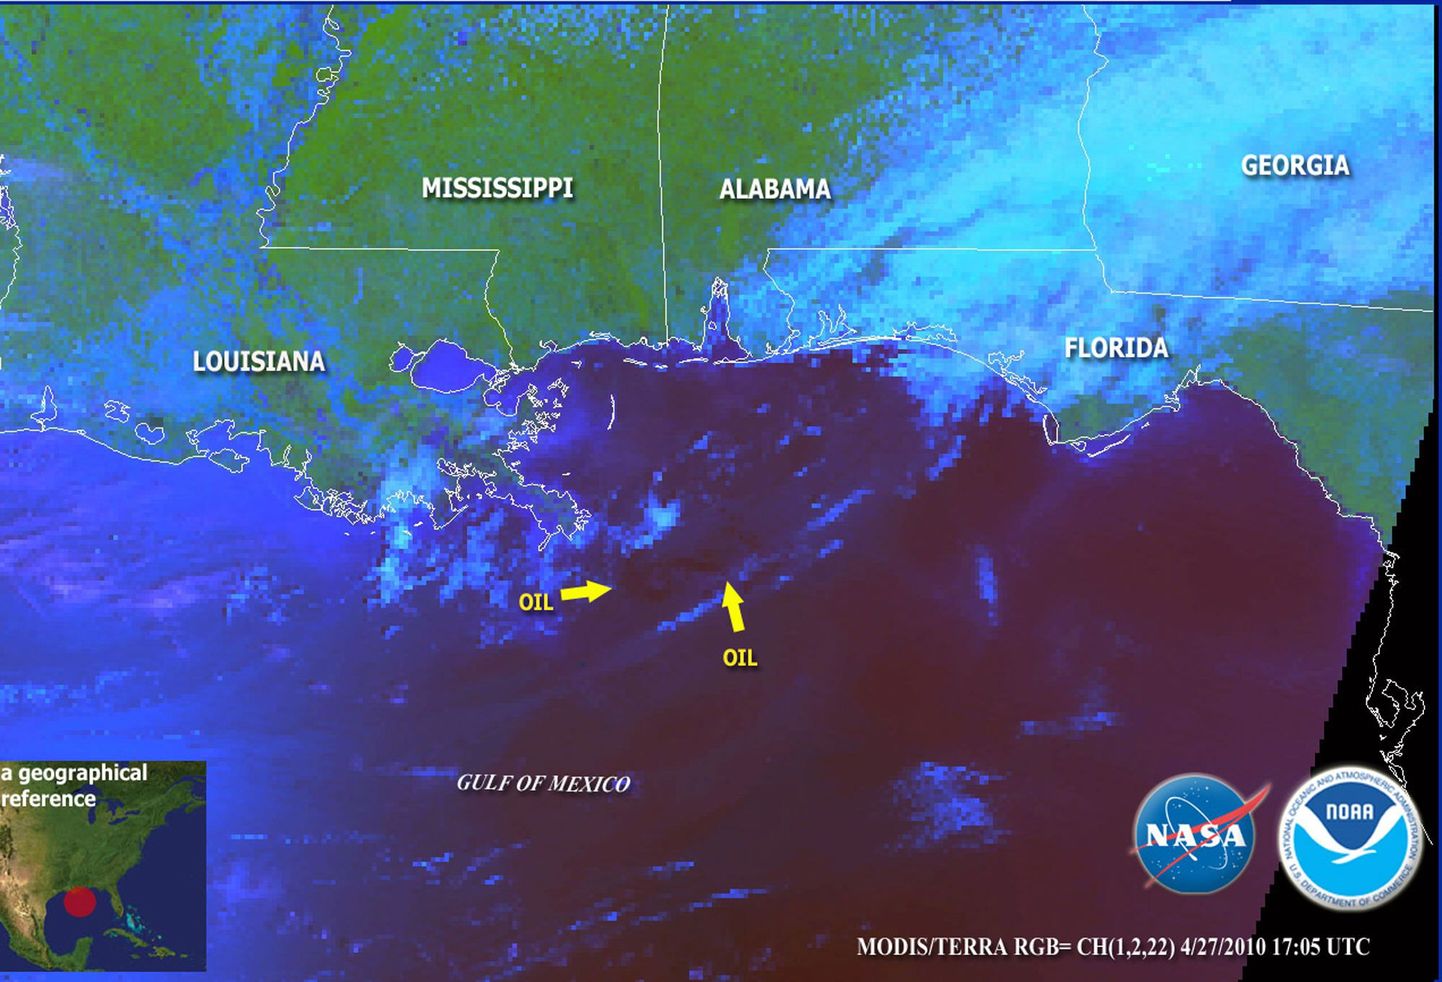 Kosmoseagentuuri NASA fotol on naftalaik märgitud ära nooltega.